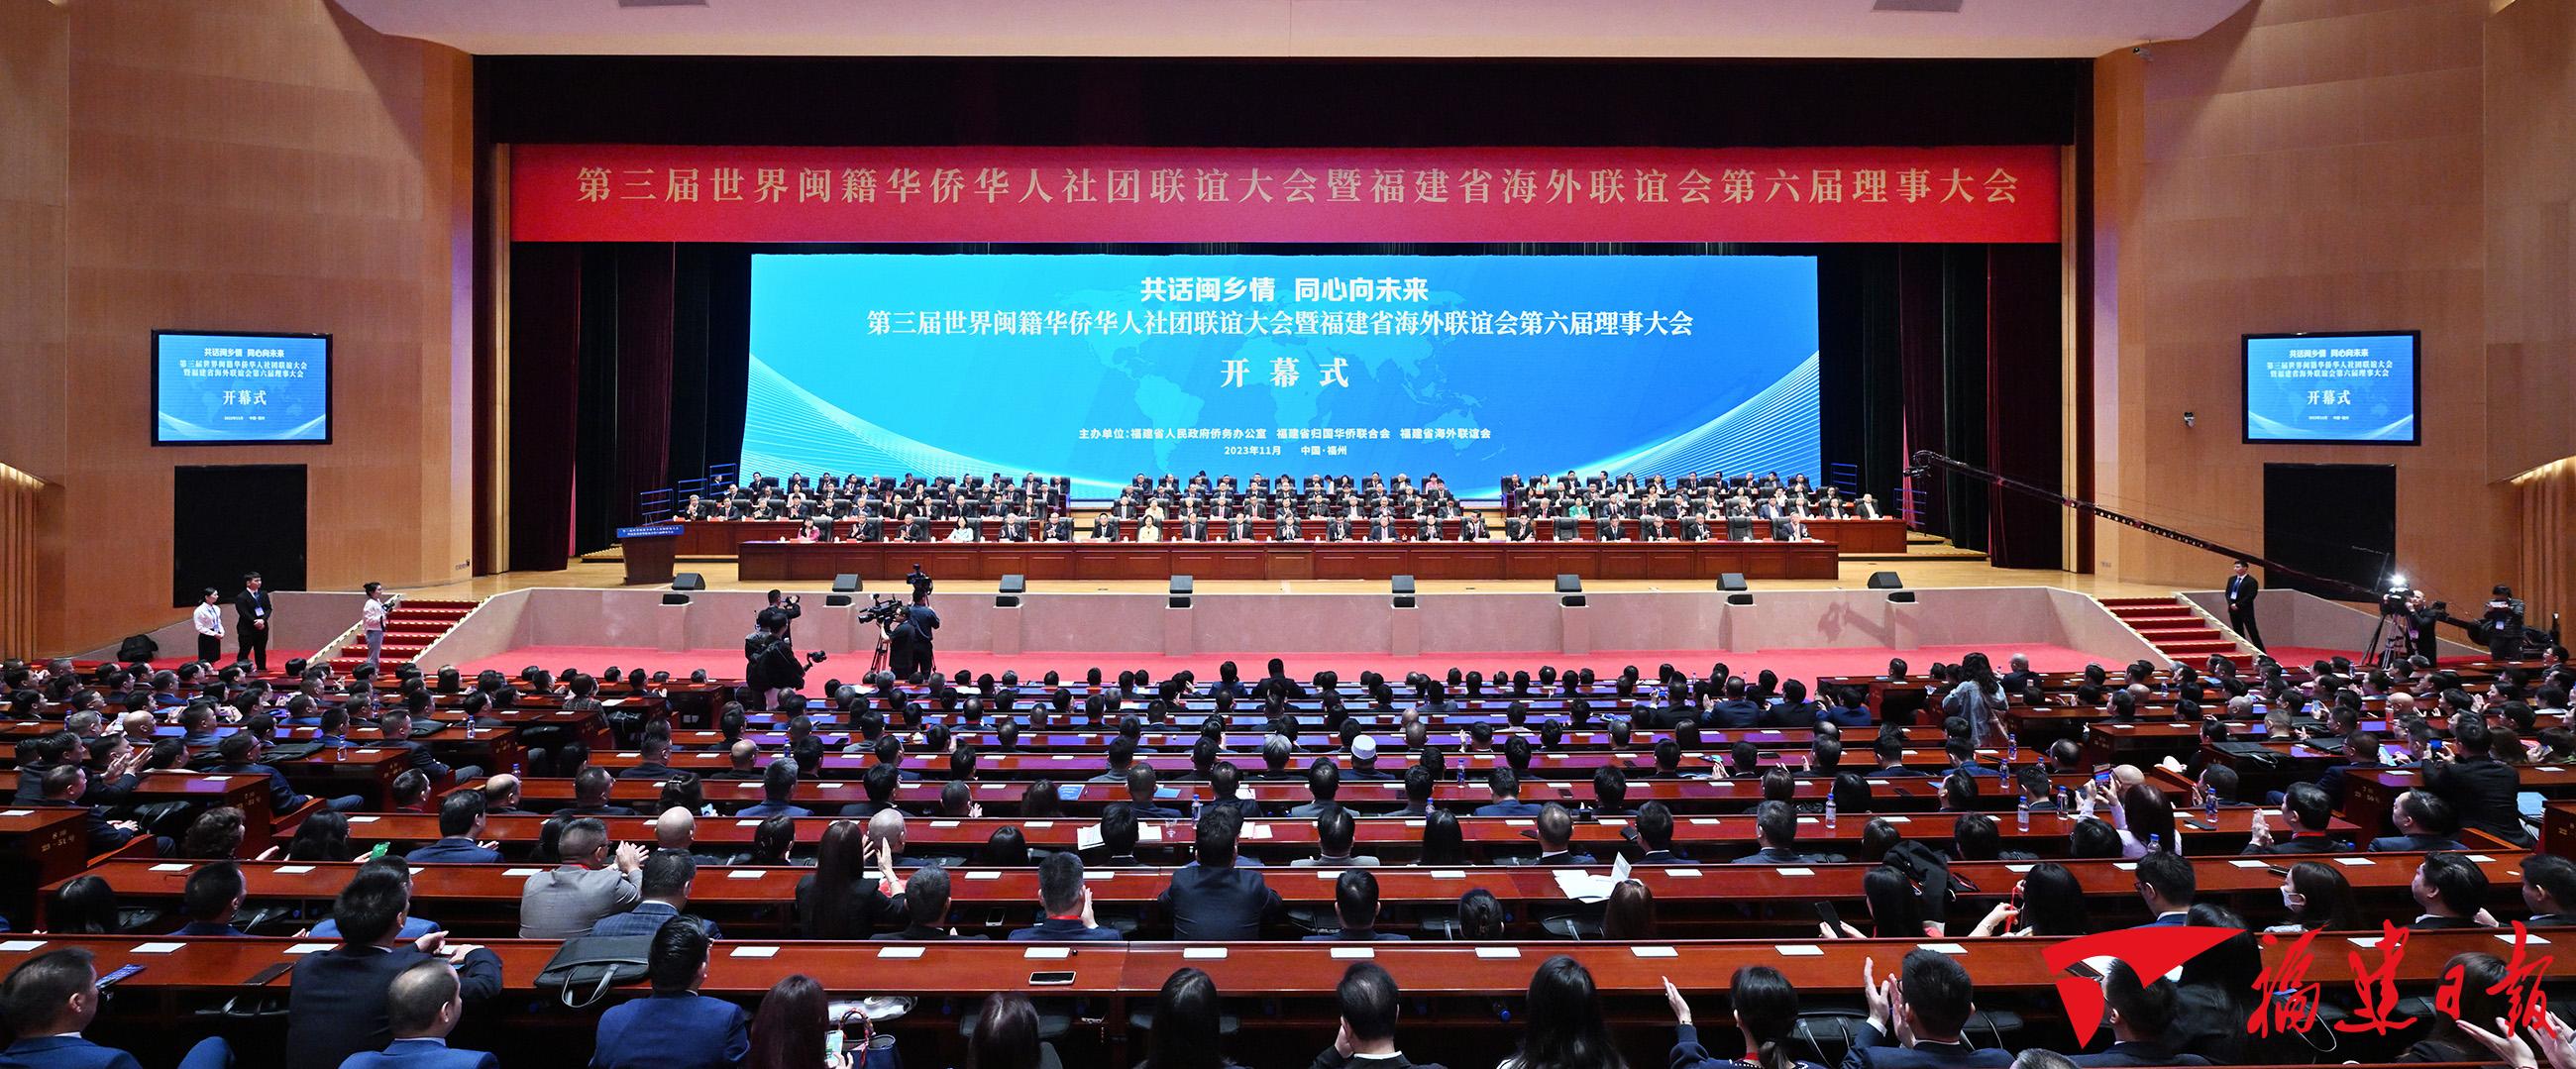 第三届世界闽籍华侨华人社团联谊大会在榕开幕